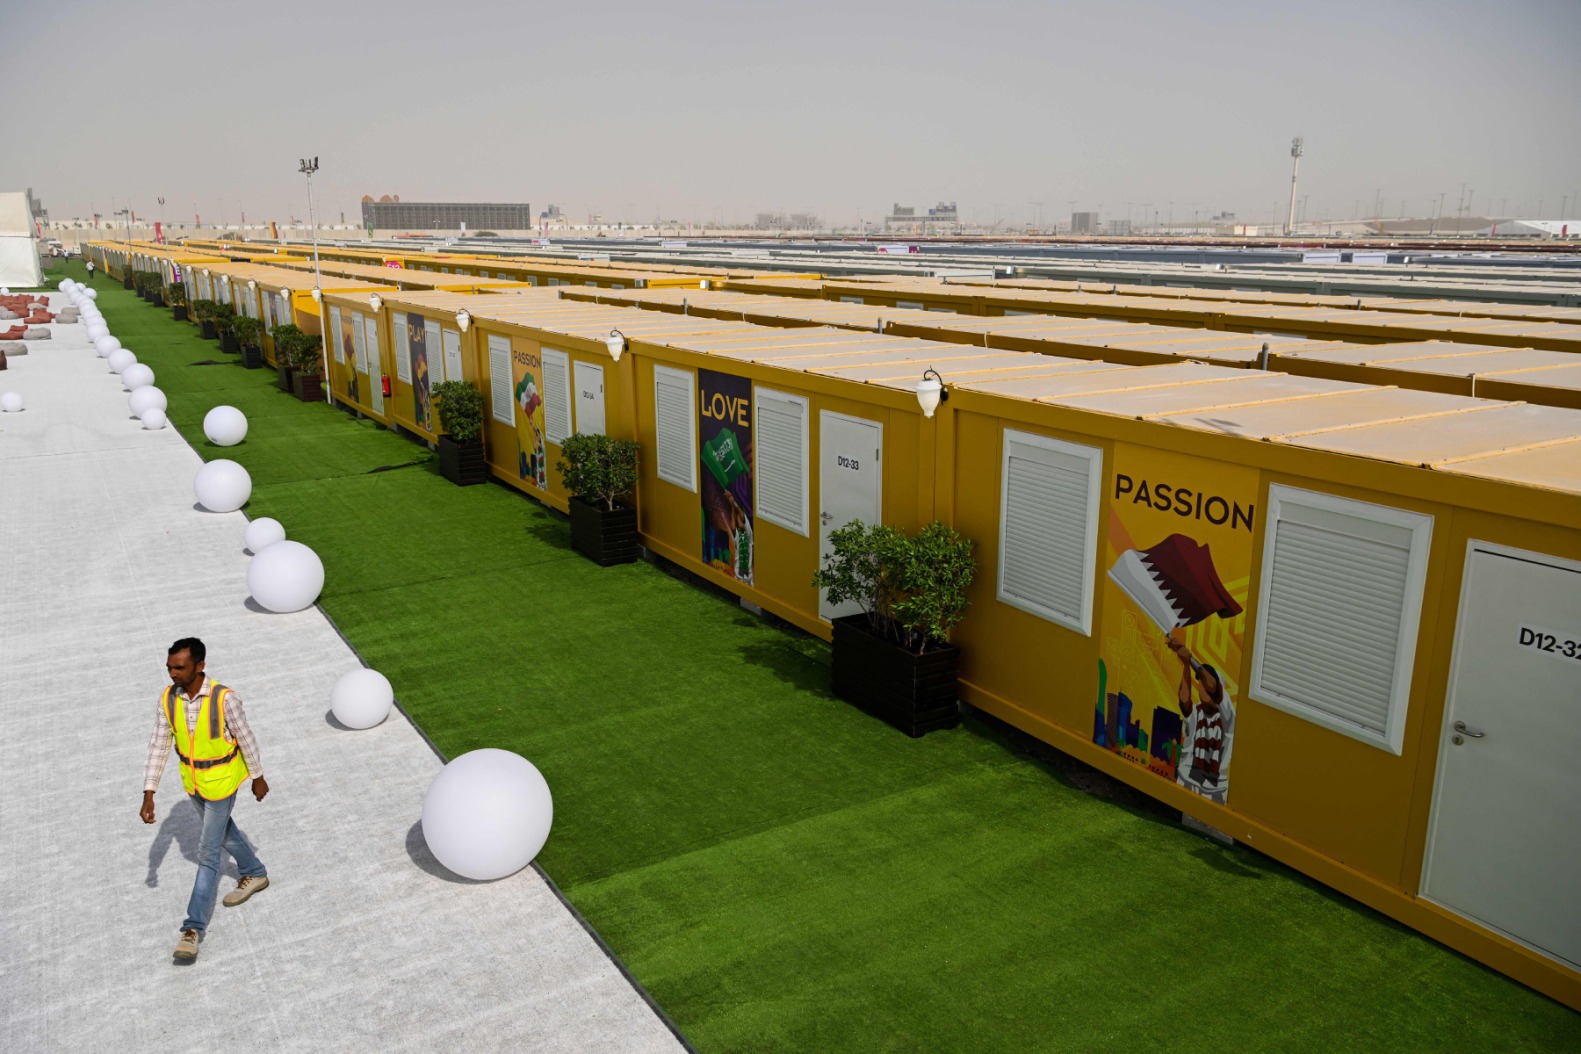 Muốn hồi sinh du lịch nhờ World Cup 2022, Qatar mở rộng sân bay, xây thêm khách sạn để “phục vụ tận răng” khách xem bóng đá - Ảnh 3.